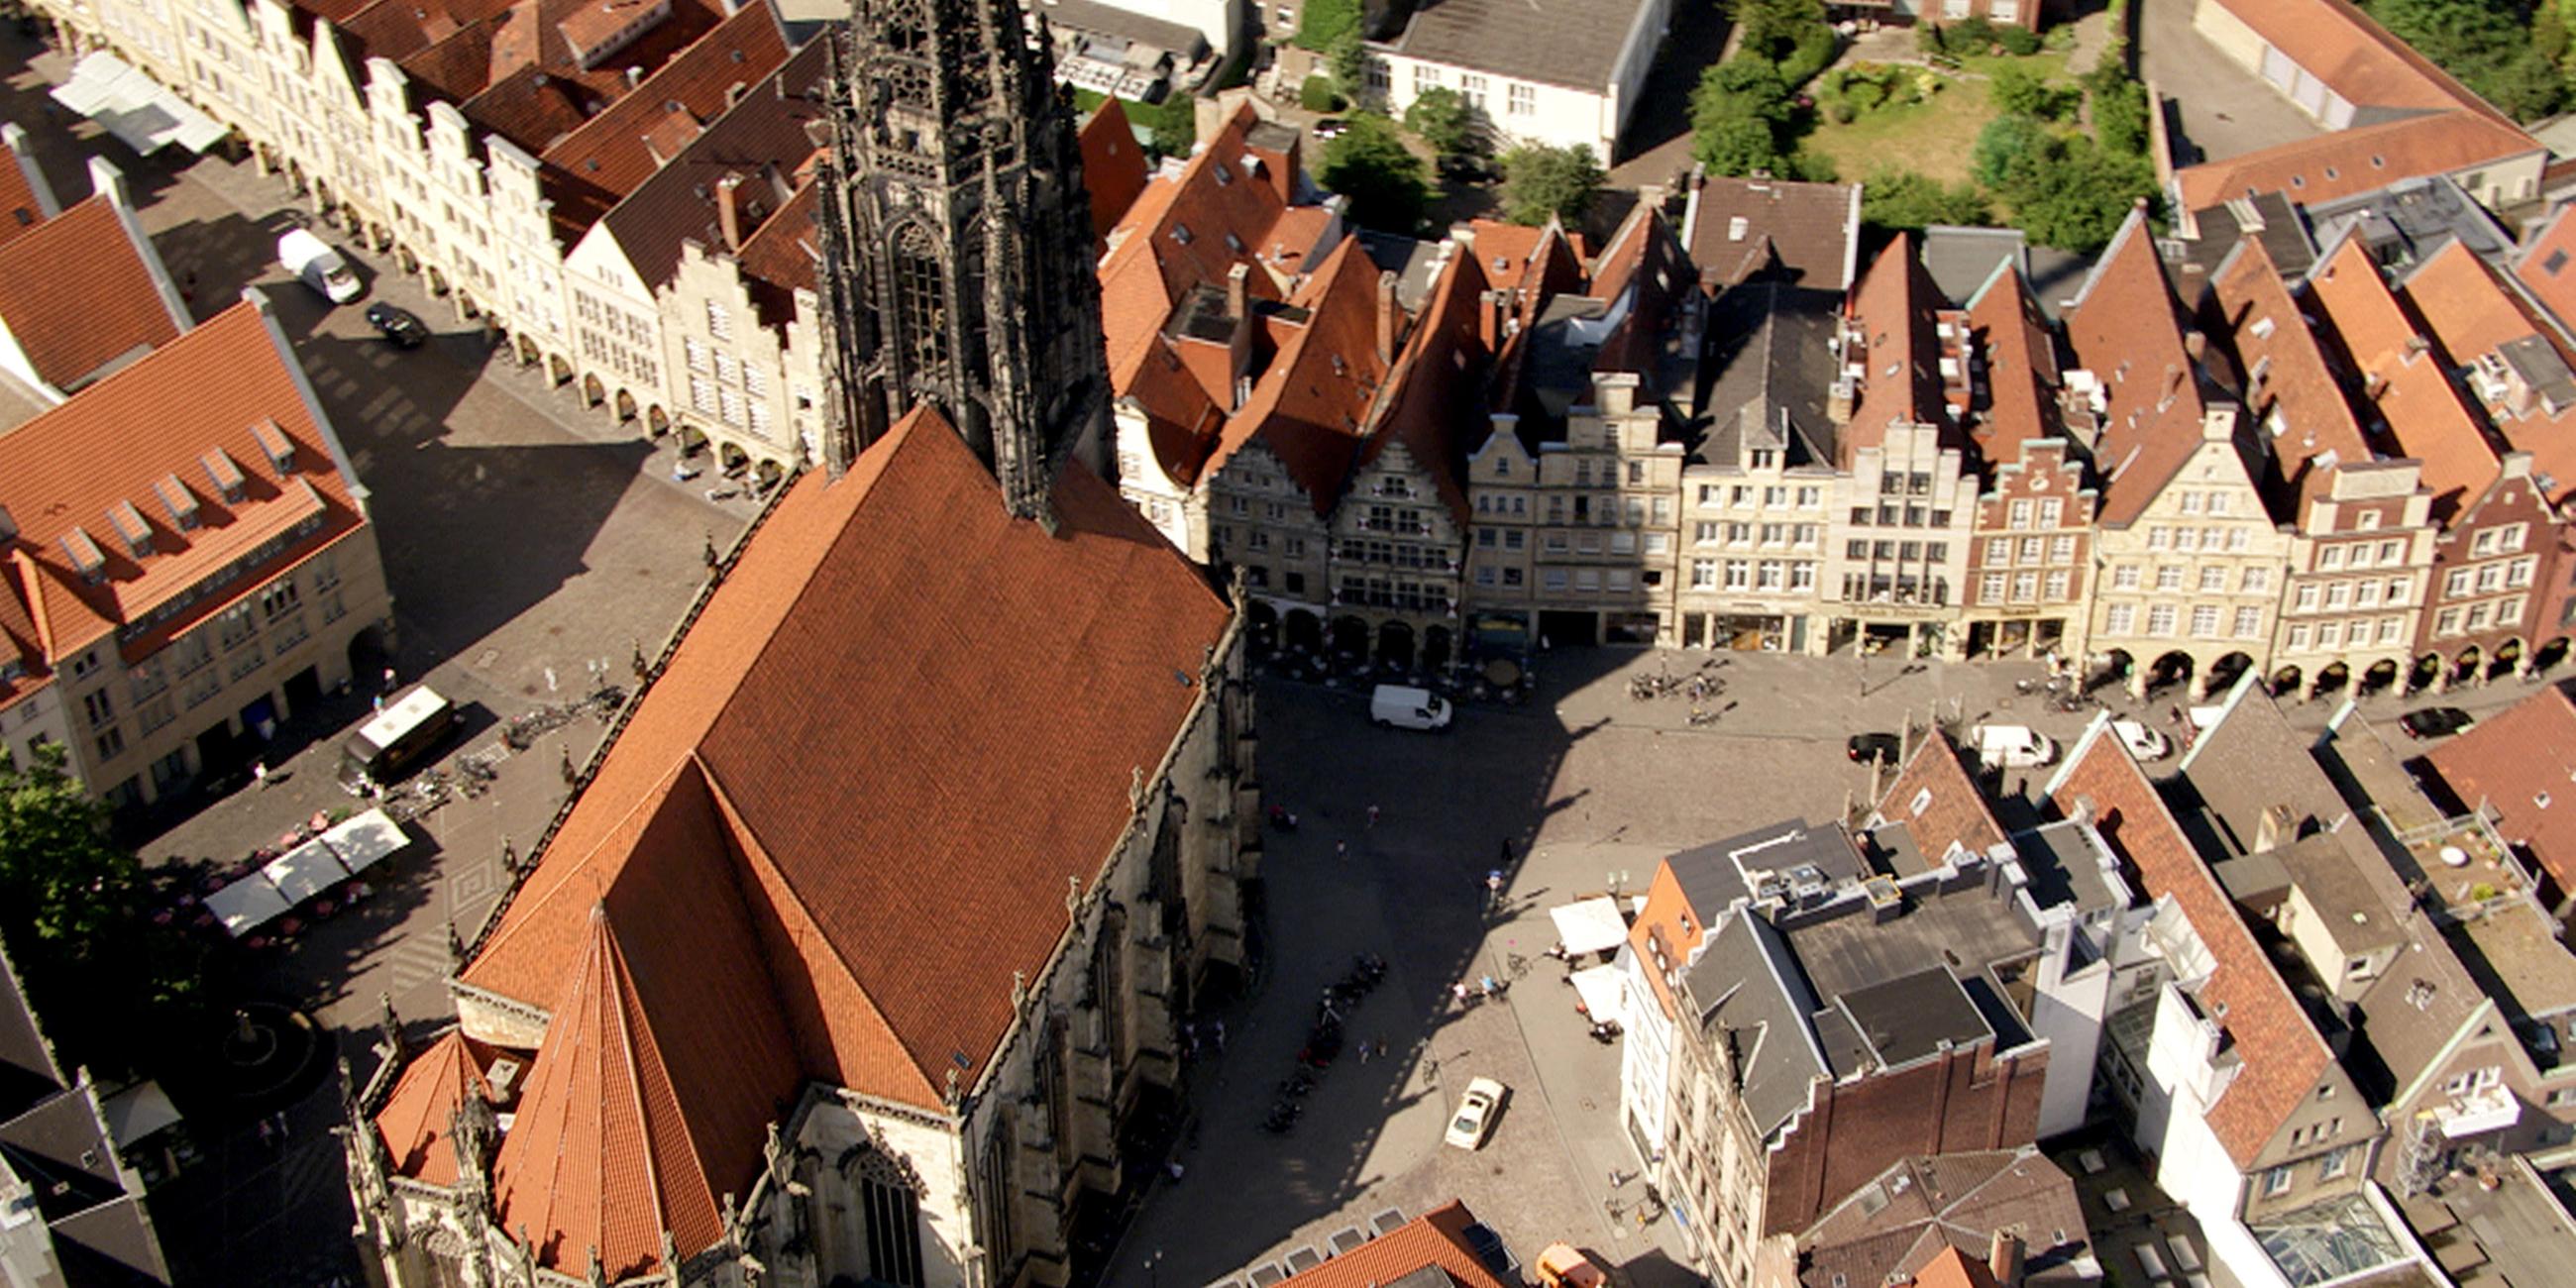 Die geschichtsträchtige Stadt Münster hat seine völlig zerstörte Altstadt nach dem Krieg nach historischem Vorbild wieder aufgebaut.